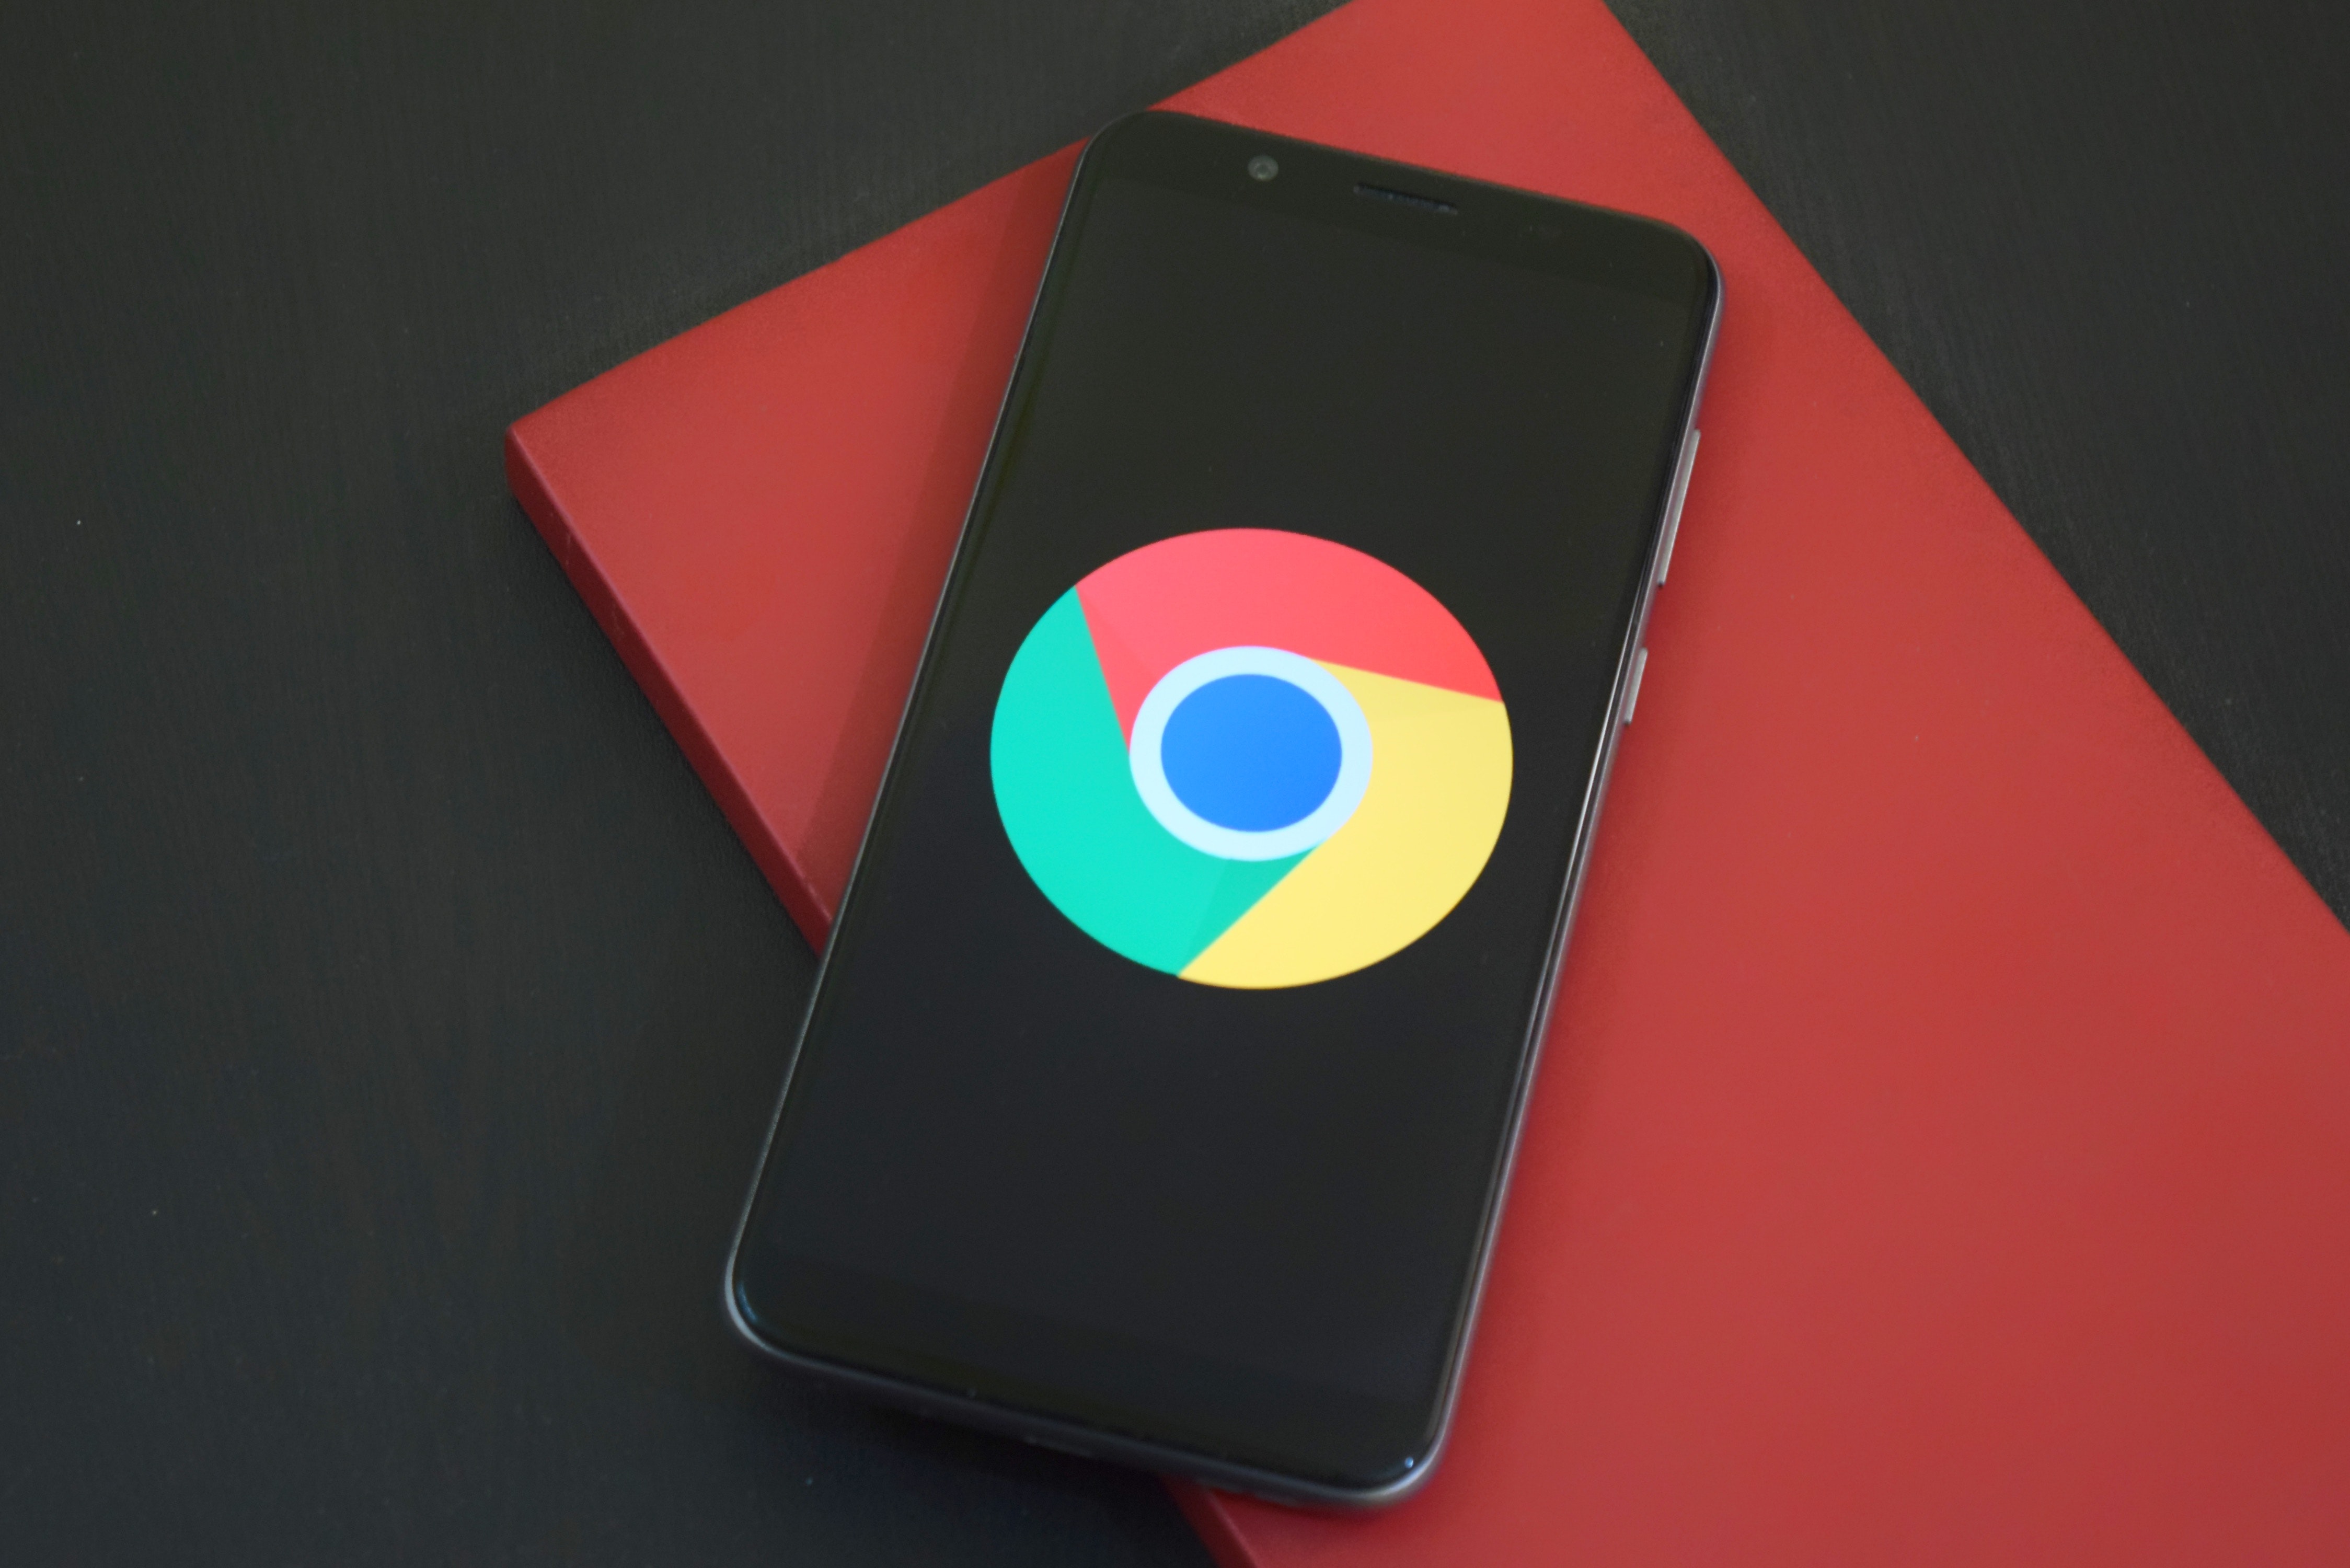 Das Google Chrome-Logo auf einem schwarzen Telefon, das auf einem roten Buch ruht